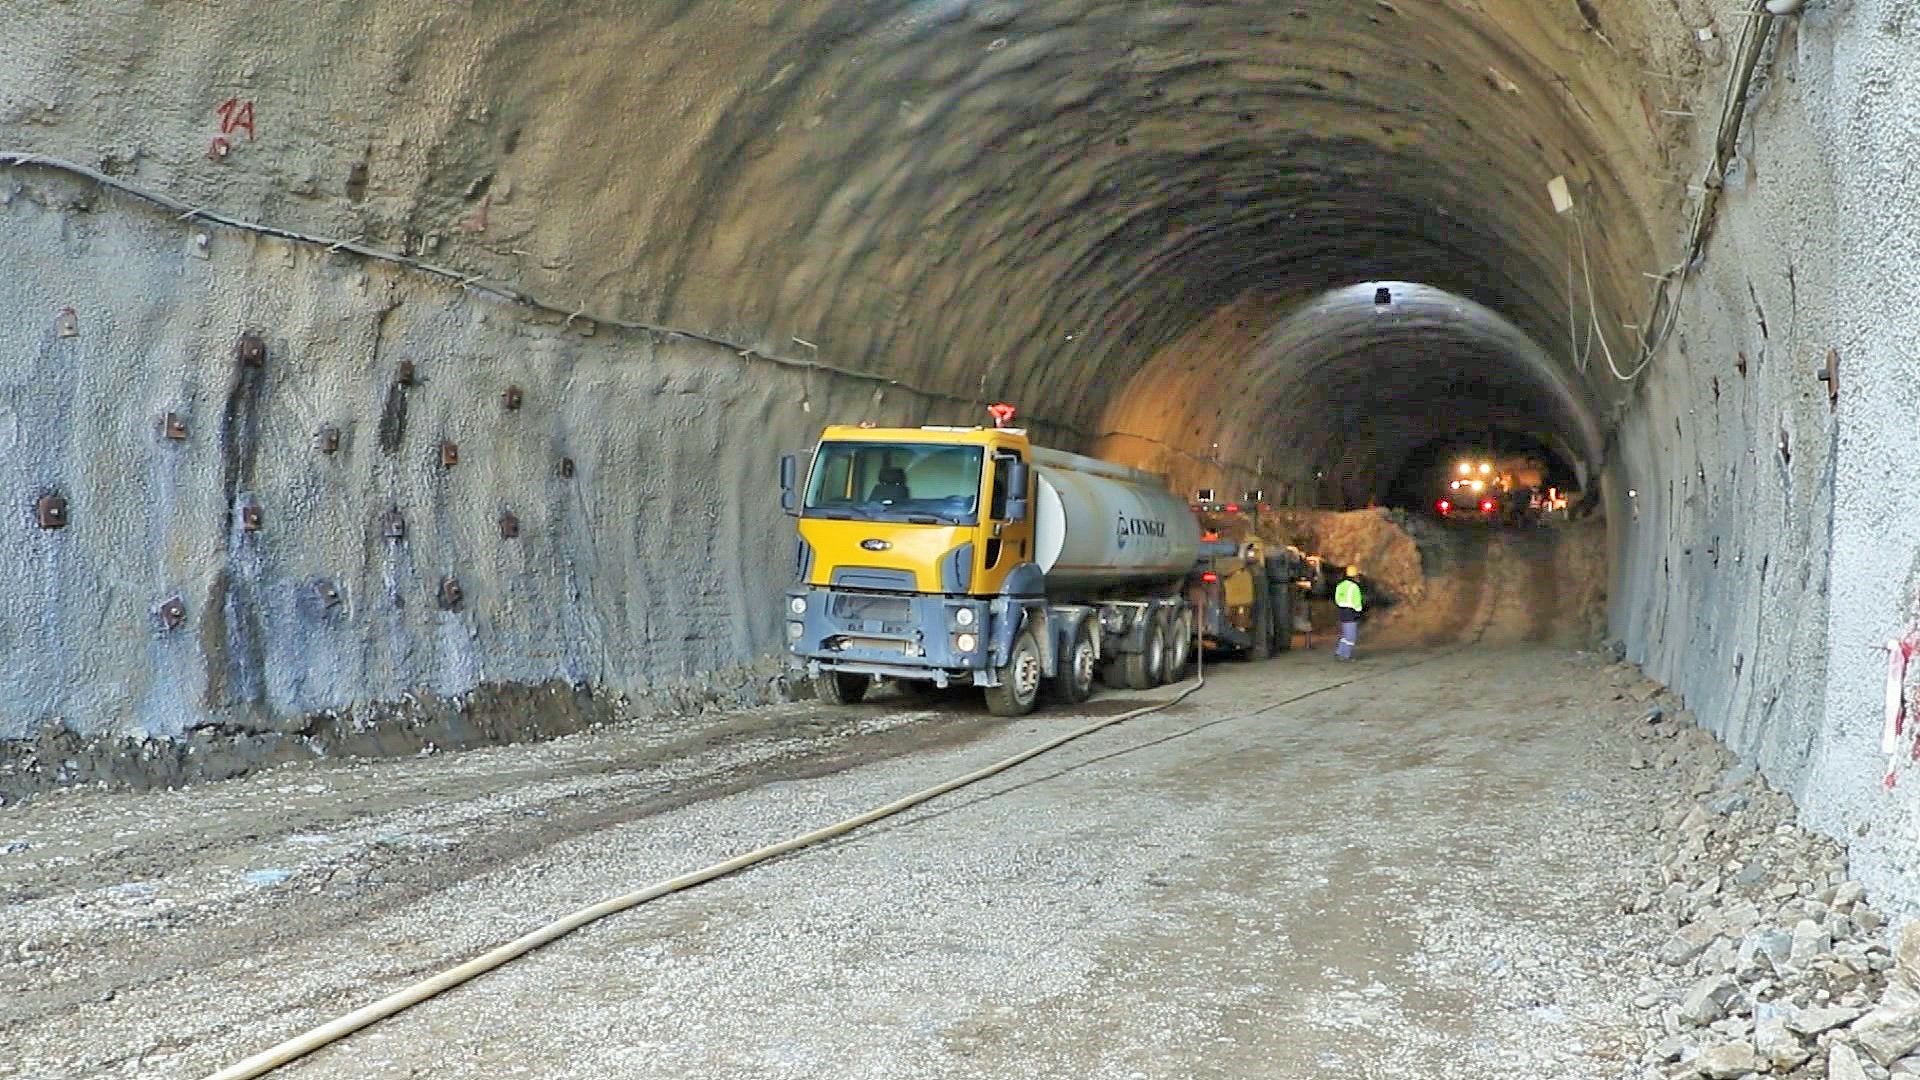 11 Toğanalı-Kəlbəcər avtomobil yolunda Murovdağ tunelinin inşası davam etdirilir - VİDEO